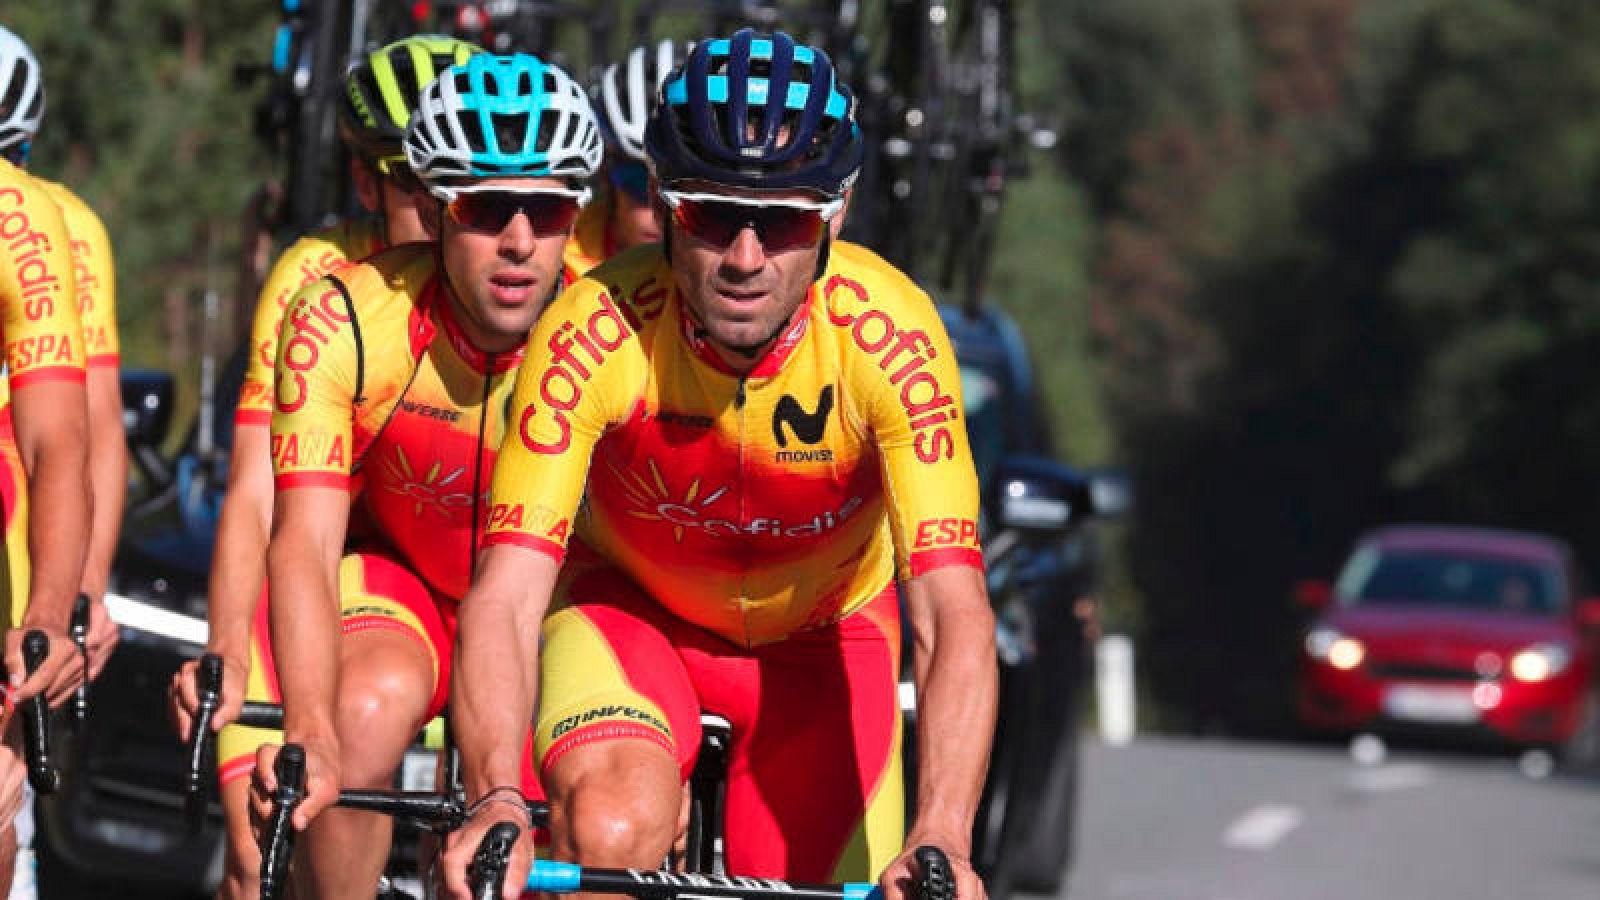 Ciclismo | de Innsbruck Valverde busca su oro más esquivo - RTVE.es